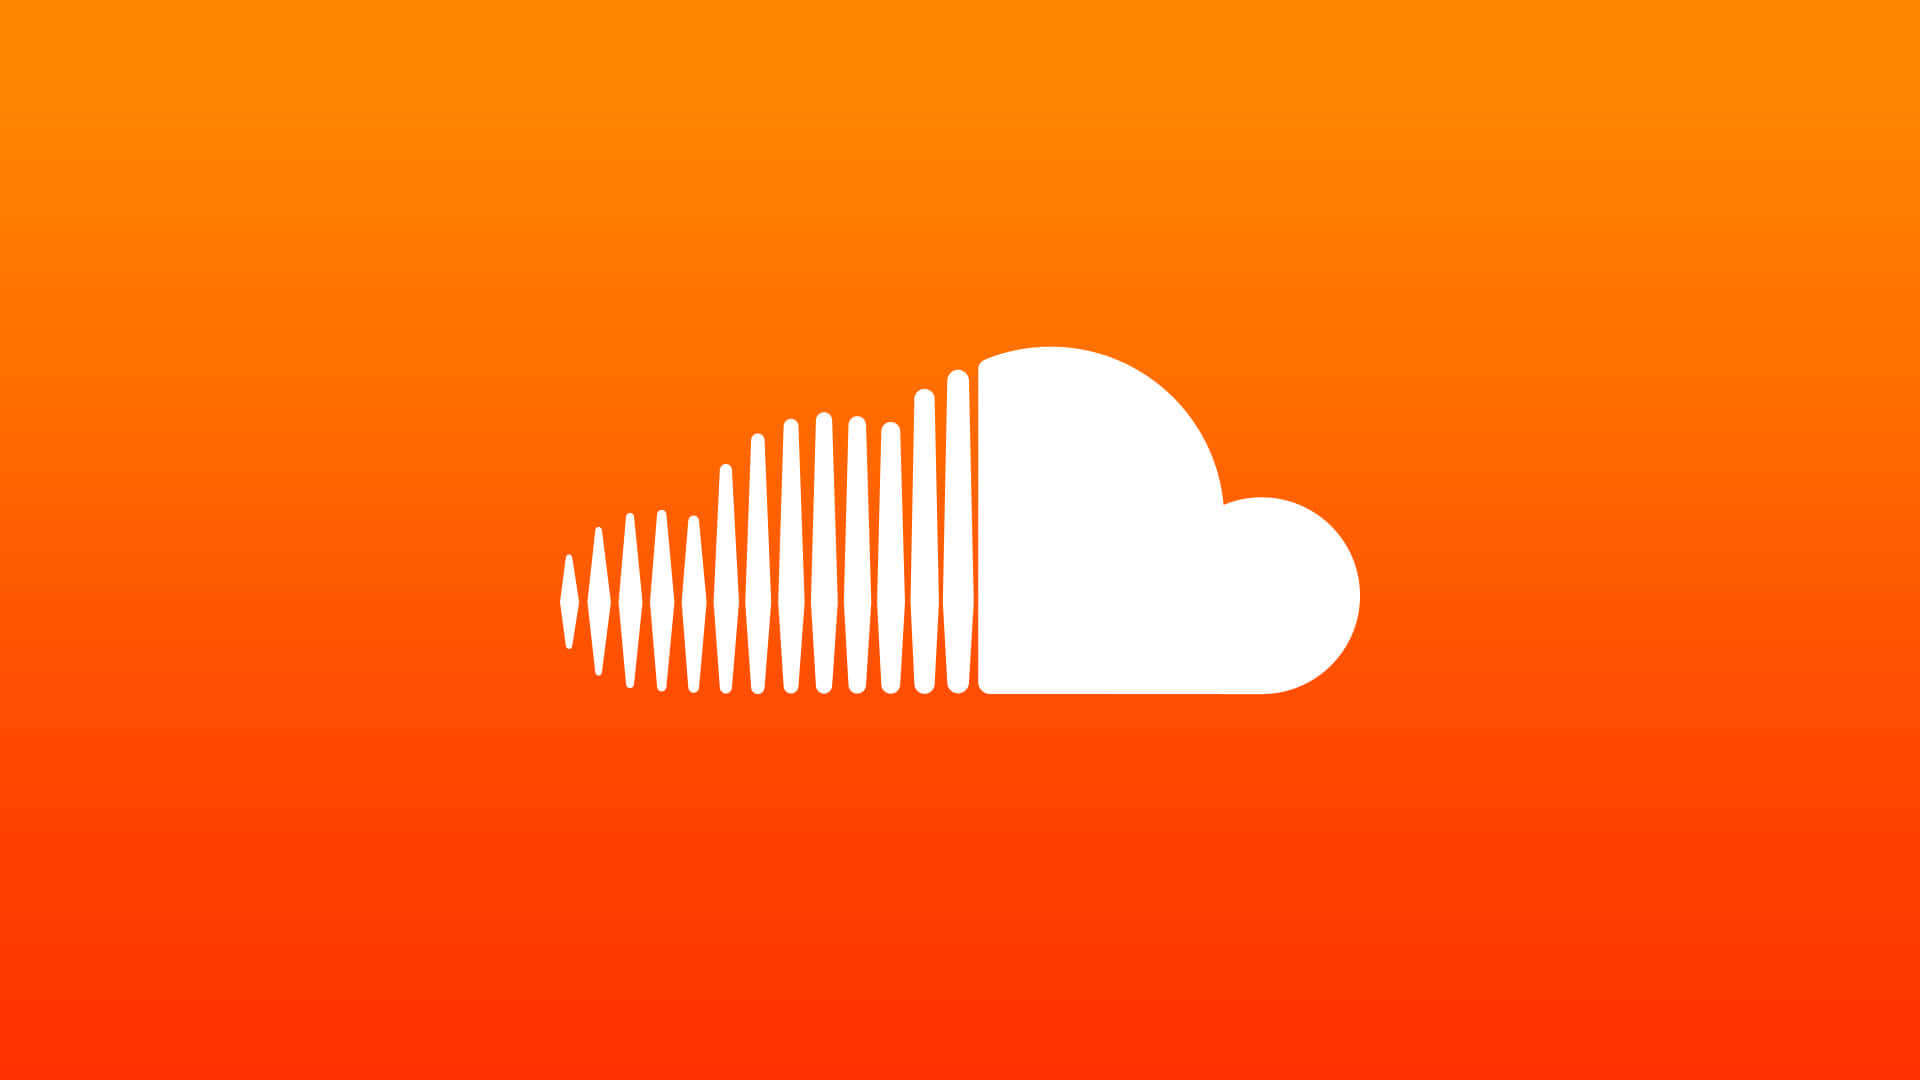 Hörensie Sich Ihre Musik An Und Teilen Sie Sie Mit Soundcloud.